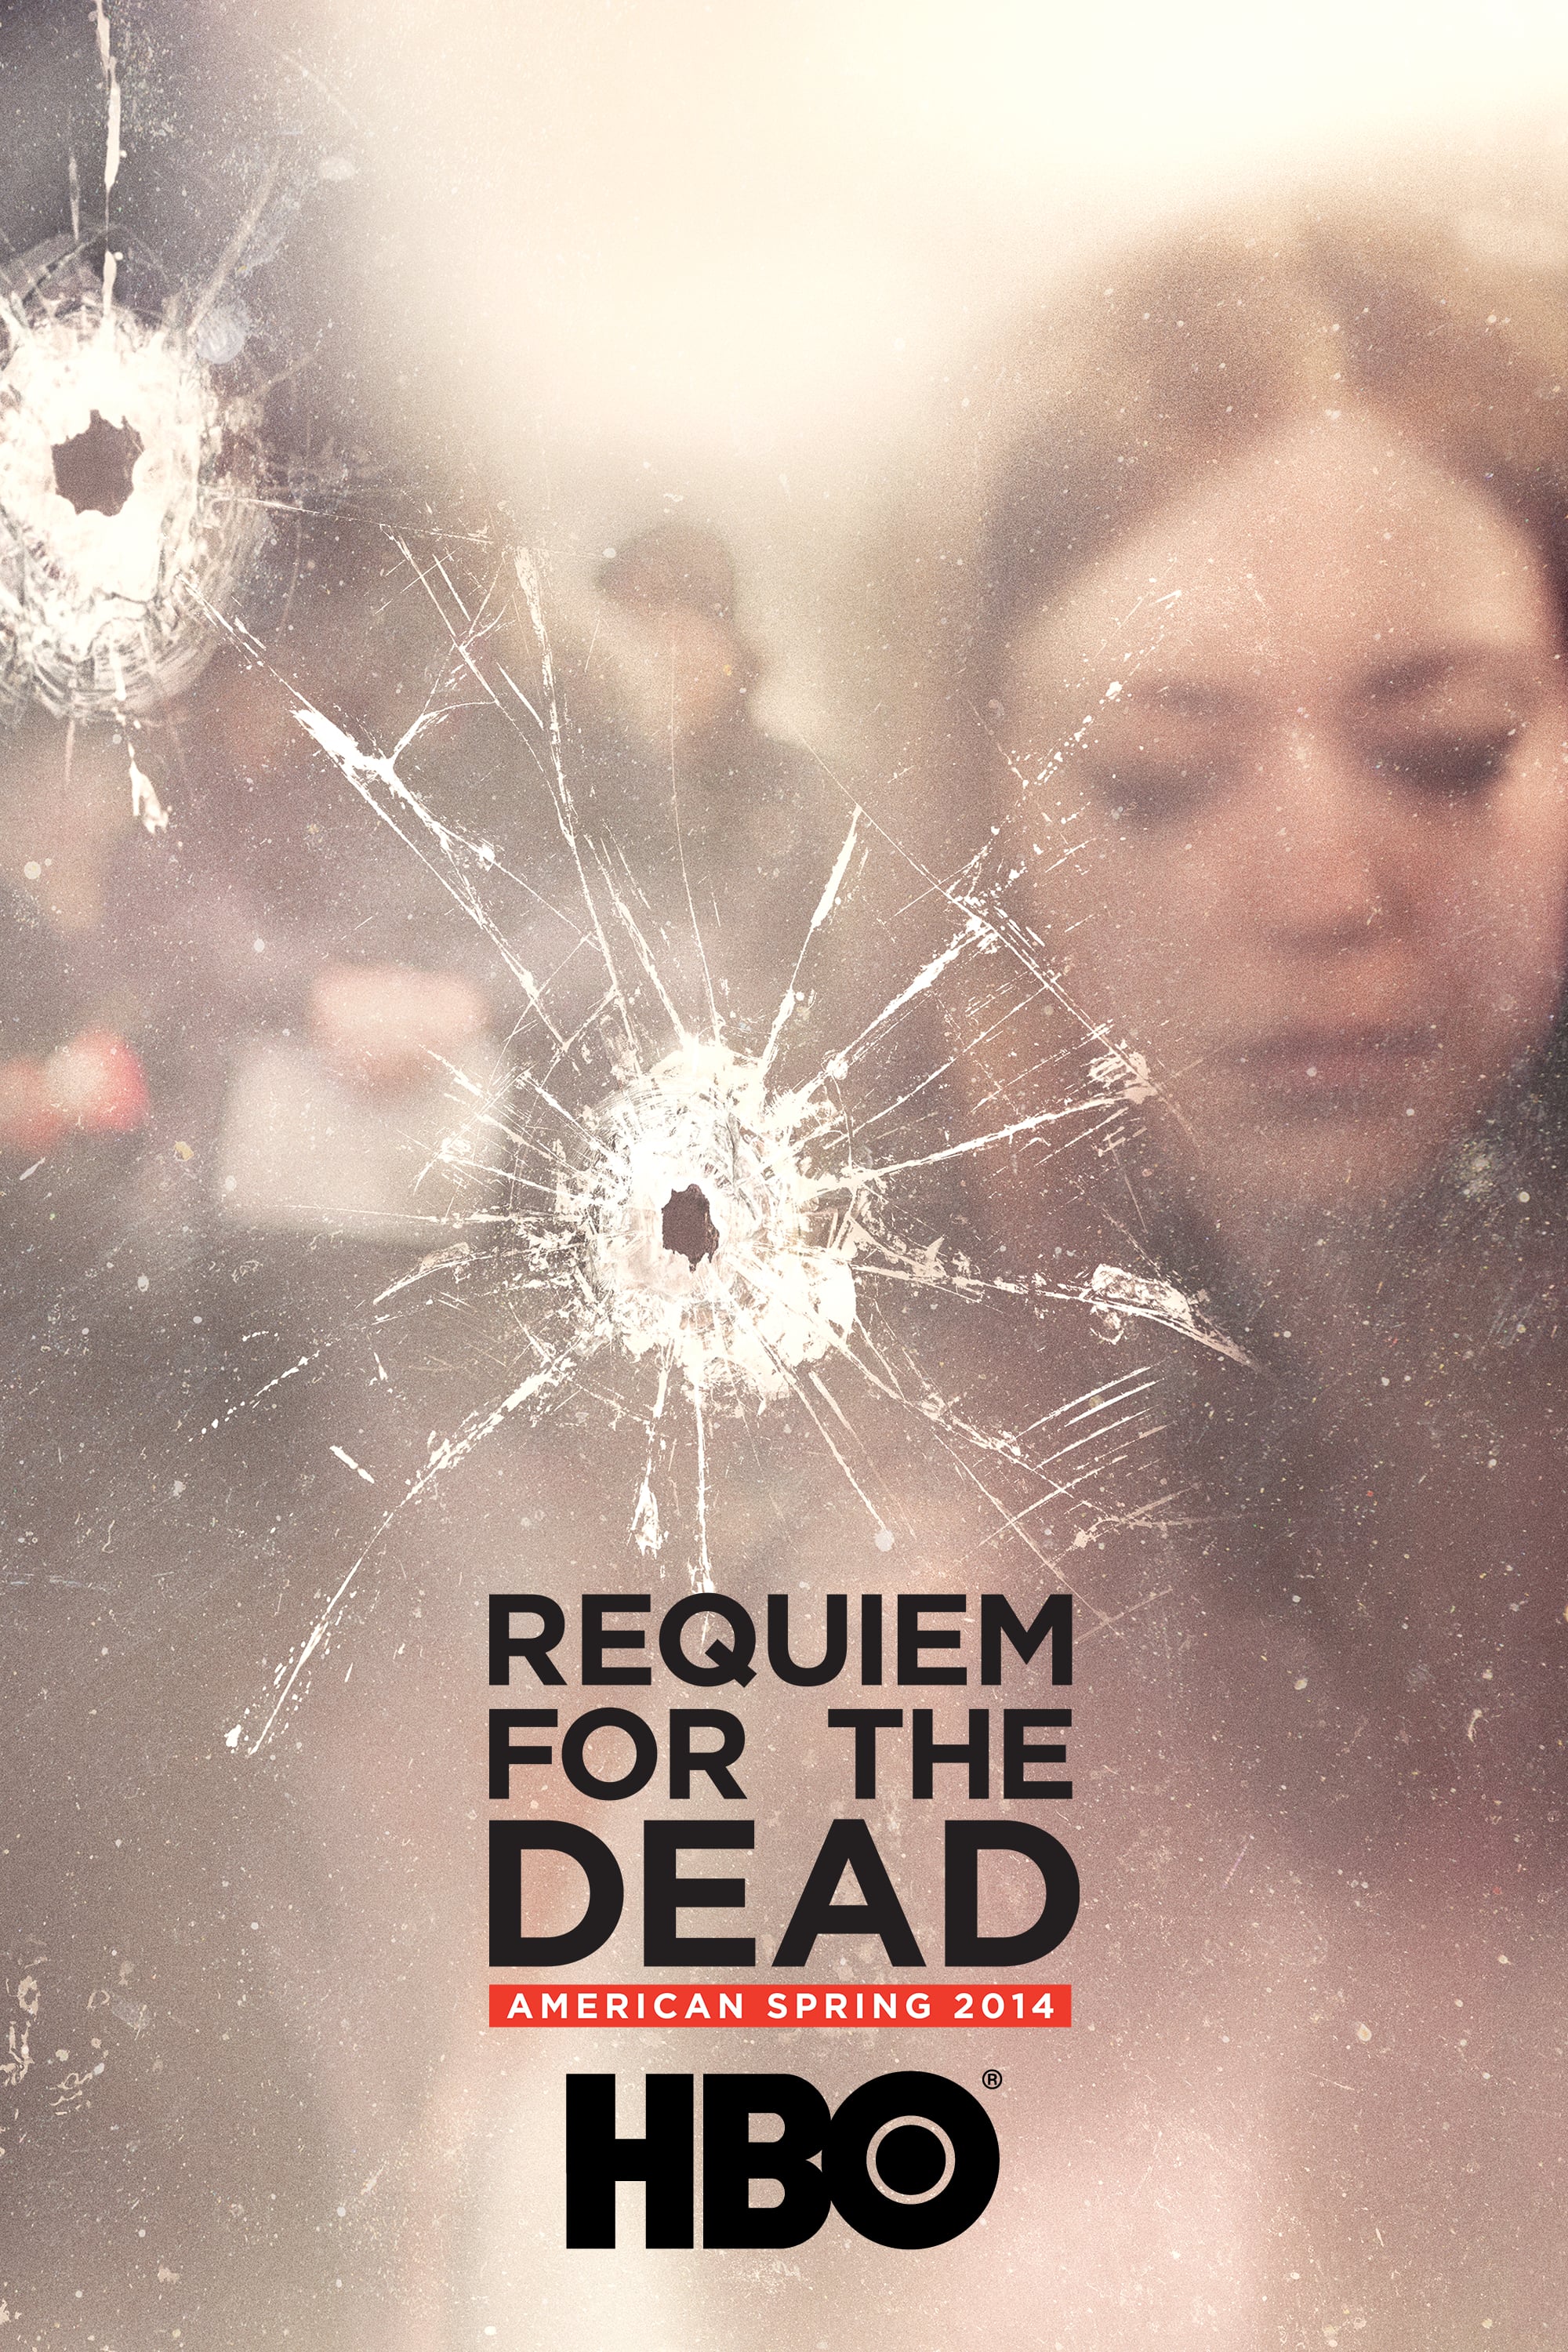 Caratula de REQUIEM FOR THE DEAD: AMERICAN SPRING 2014 (Requiem por los muertos) 